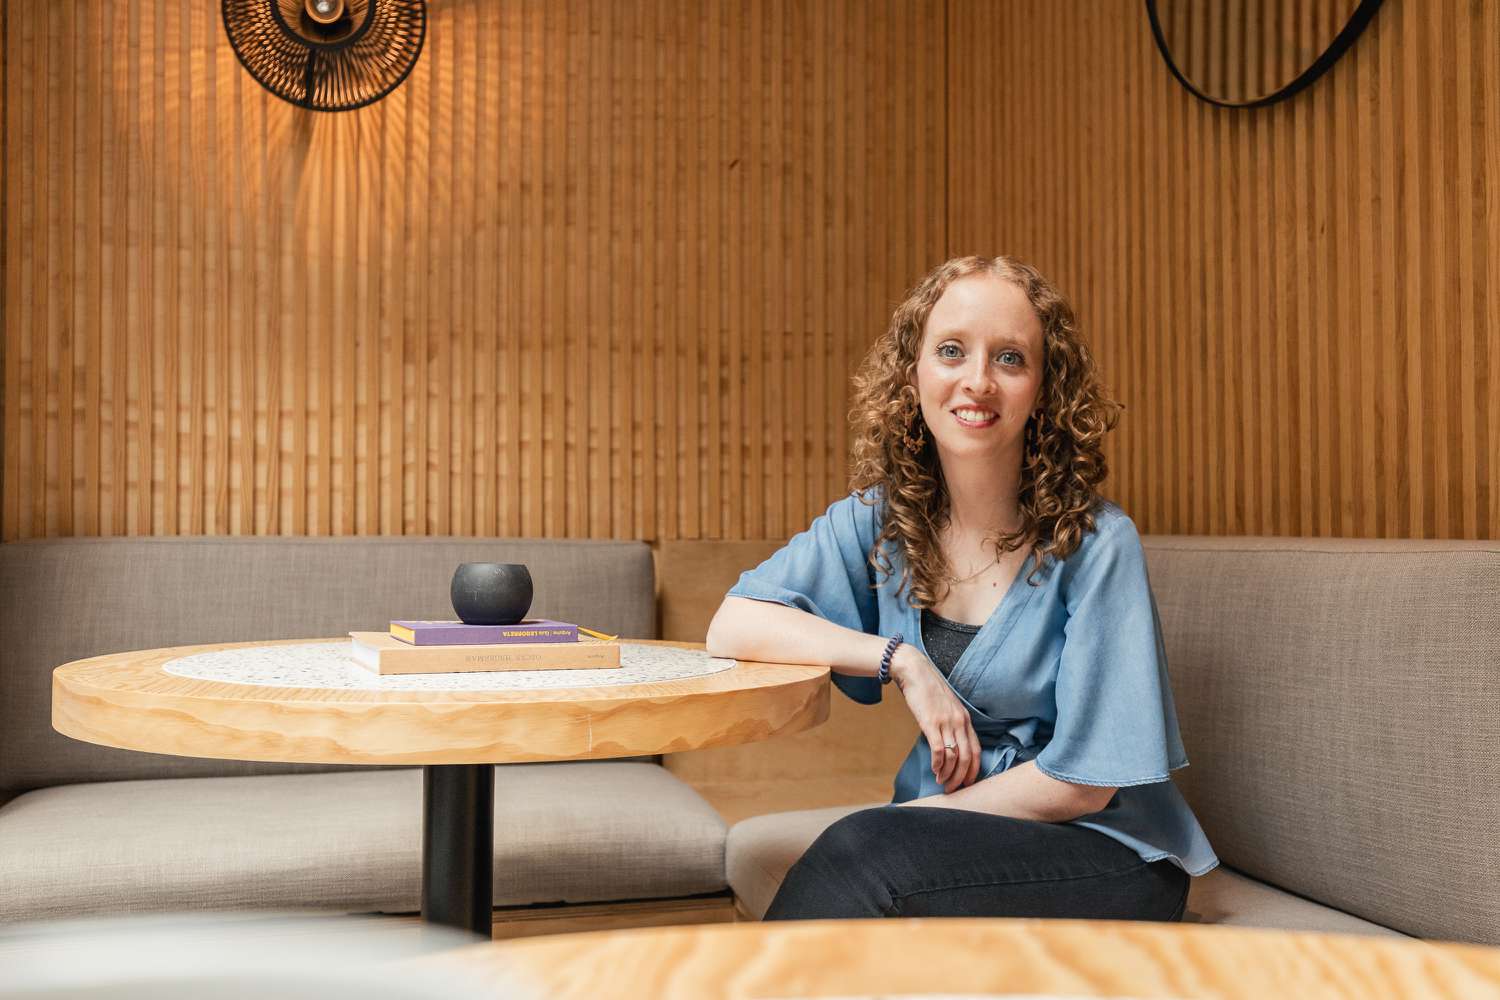 Alexa Backel posiert an einem Holztisch mit einer strukturierten Wand im Hintergrund